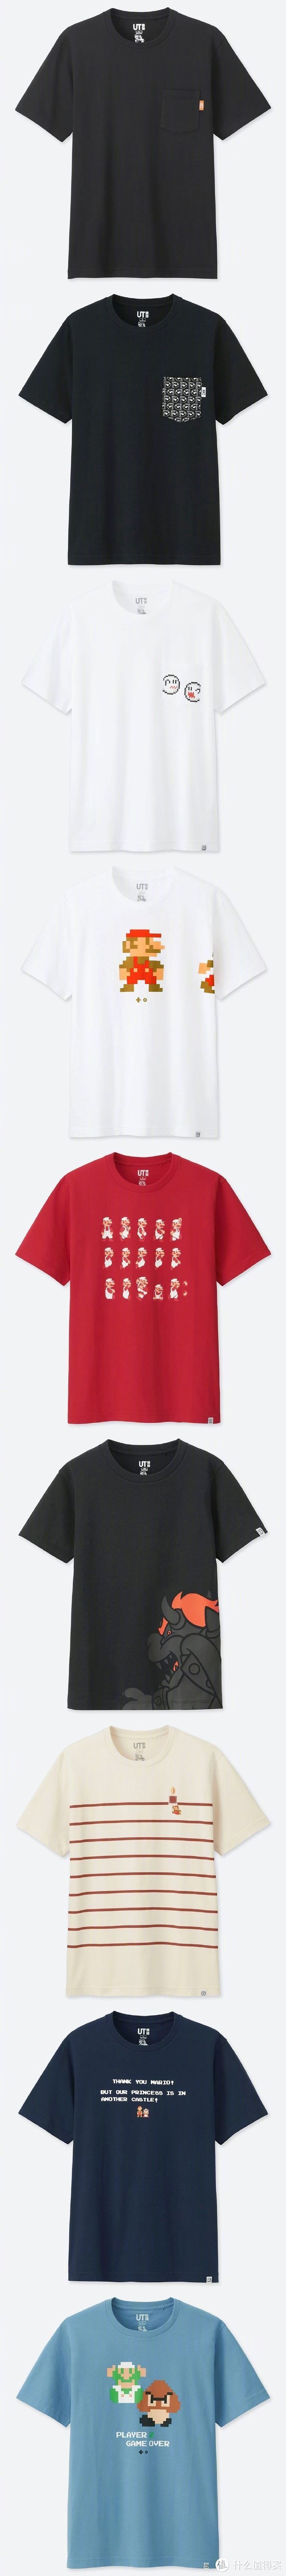 重返游戏：优衣库 x 任天堂新款 T恤公开 4月开售！